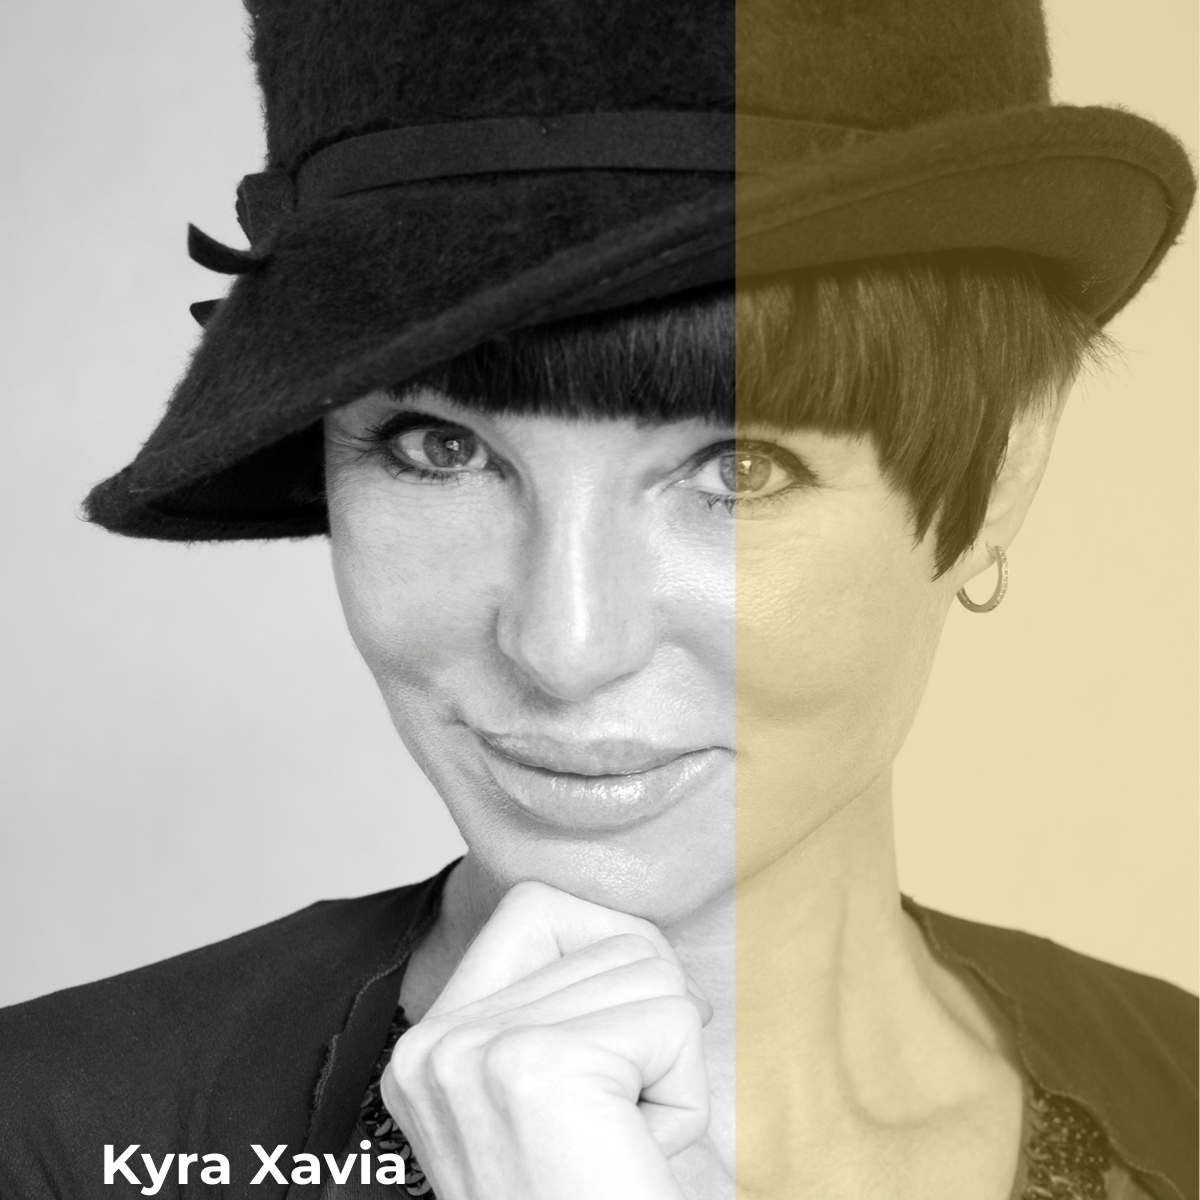 Kyra Xavia advisory board the lighting police